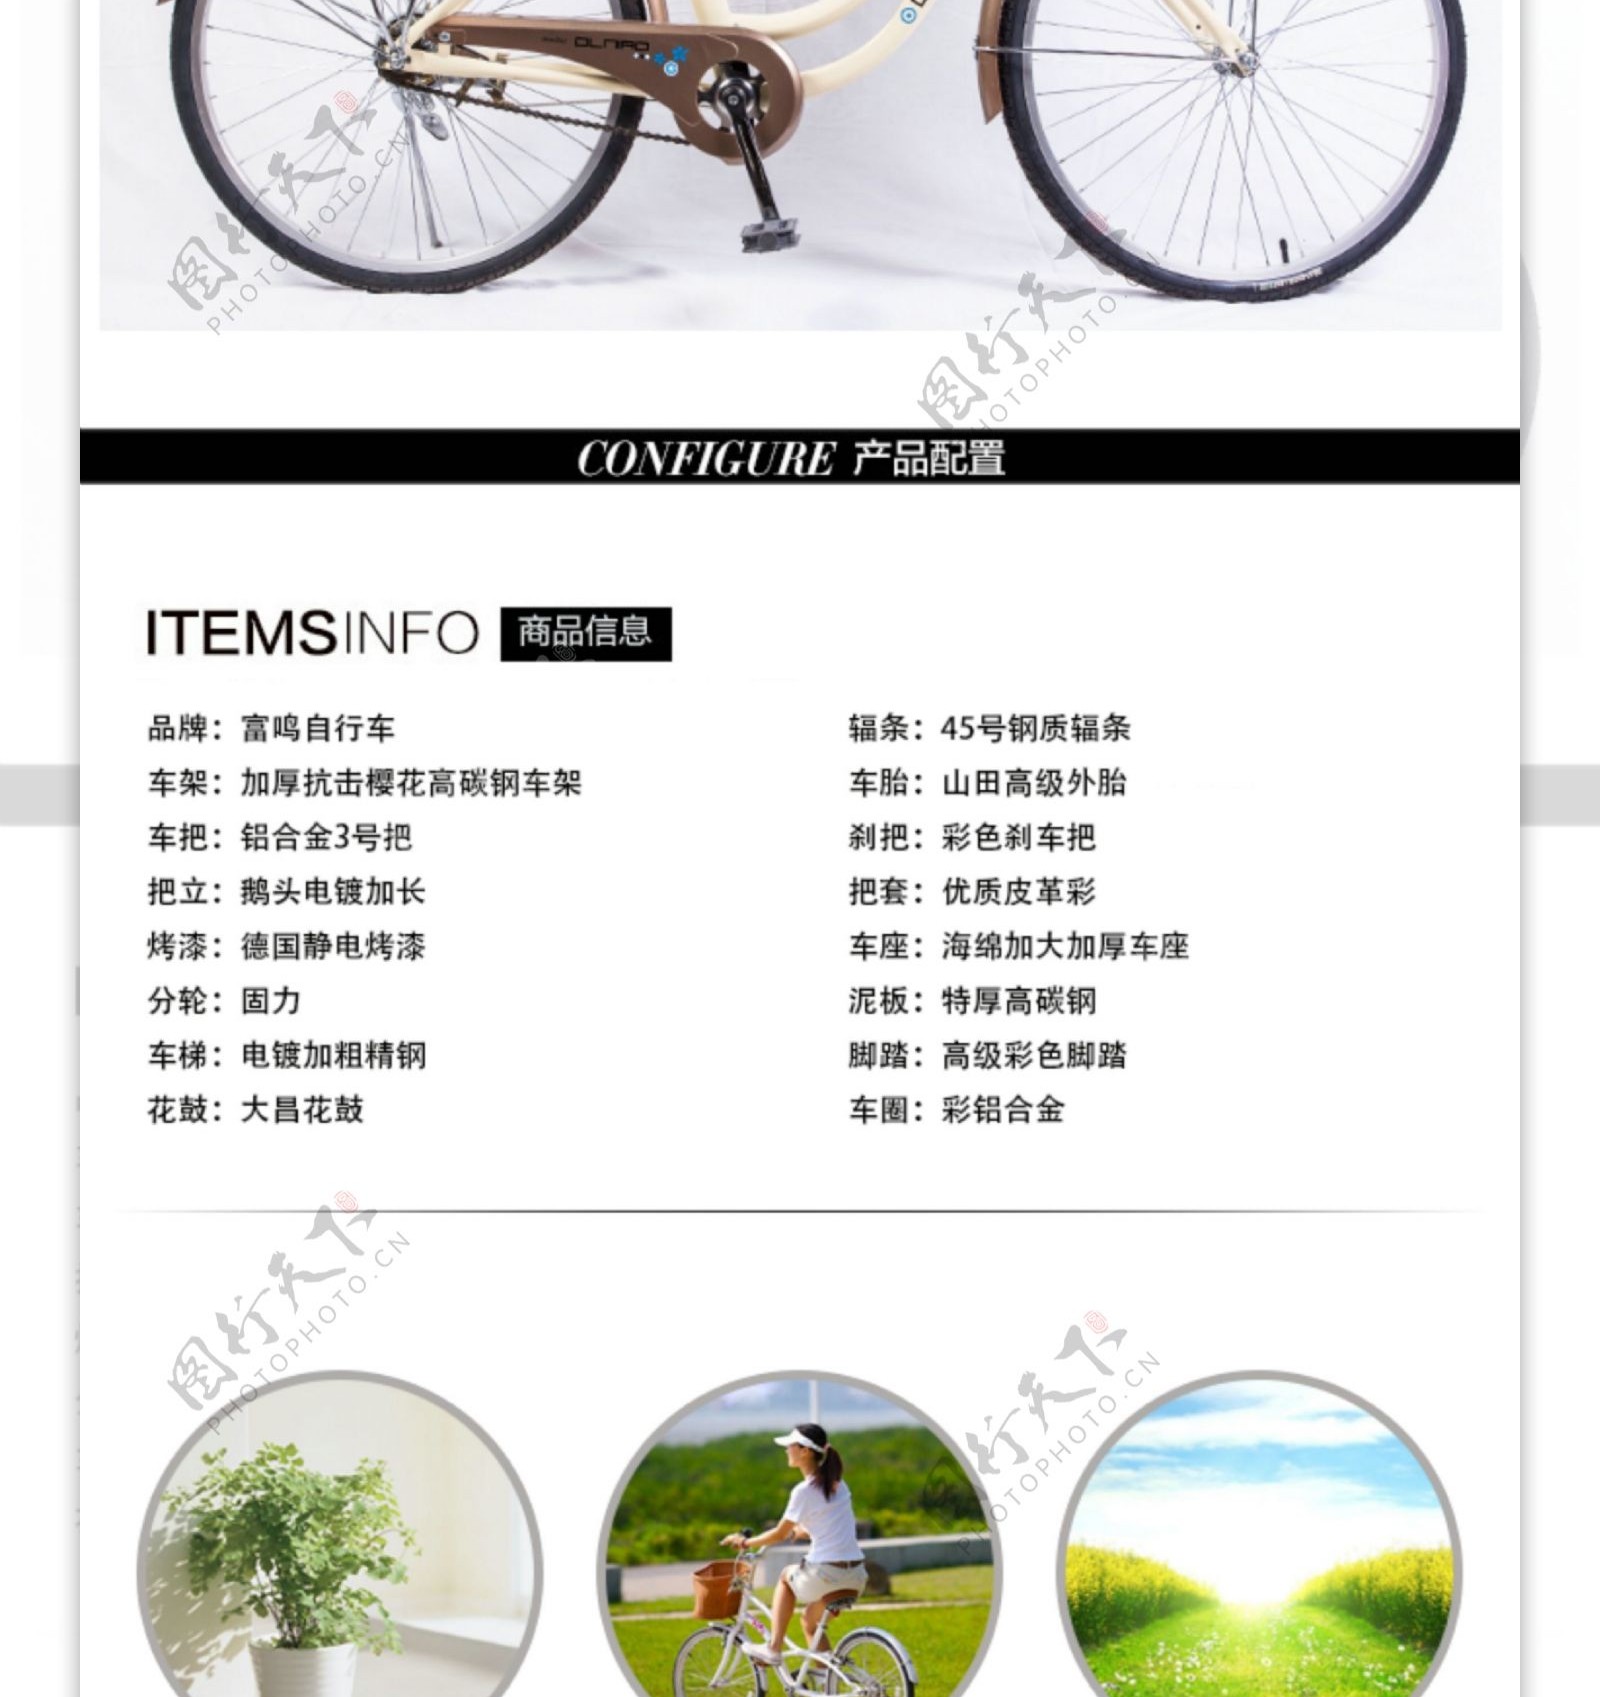 樱花自行车详情设计